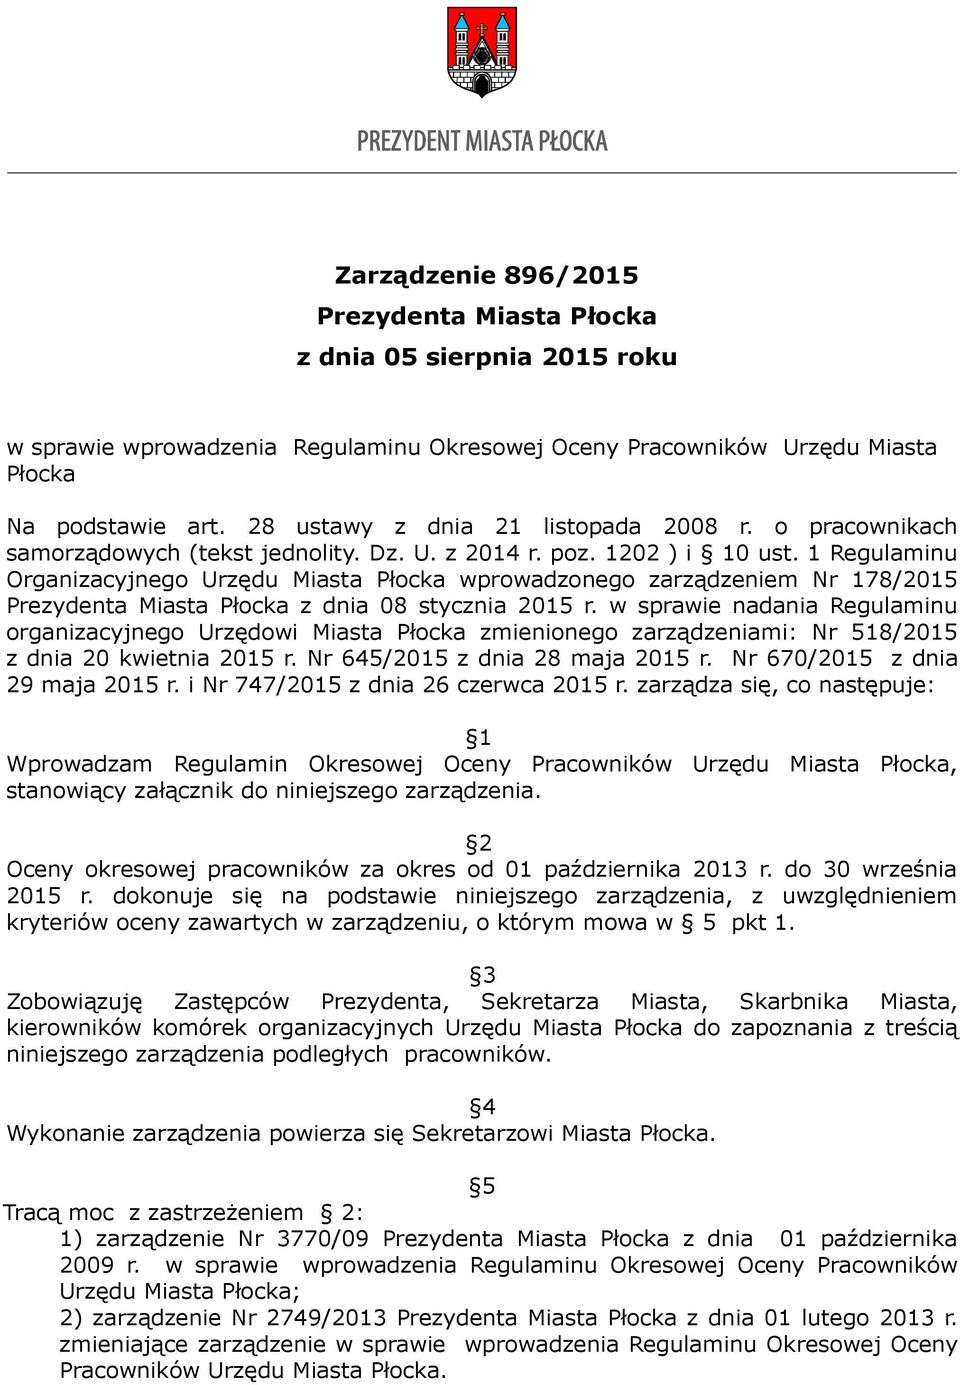 1 Regulaminu Organizacyjnego Urzędu Miasta Płocka wprowadzonego zarządzeniem Nr 178/2015 Prezydenta Miasta Płocka z dnia 08 stycznia 2015 r.